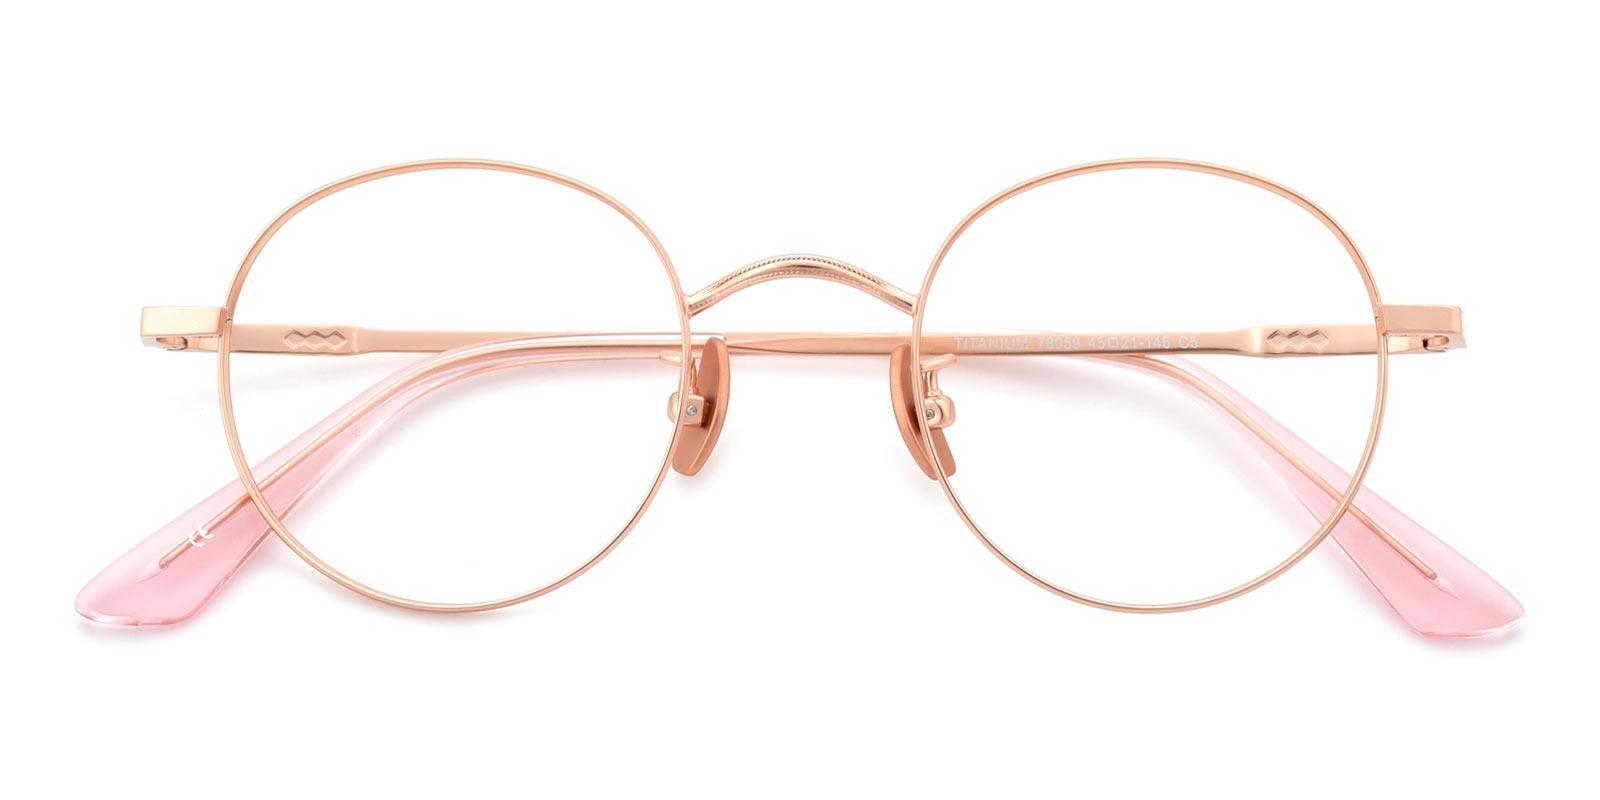 Phobon Gold Titanium Eyeglasses , NosePads Frames from ABBE Glasses